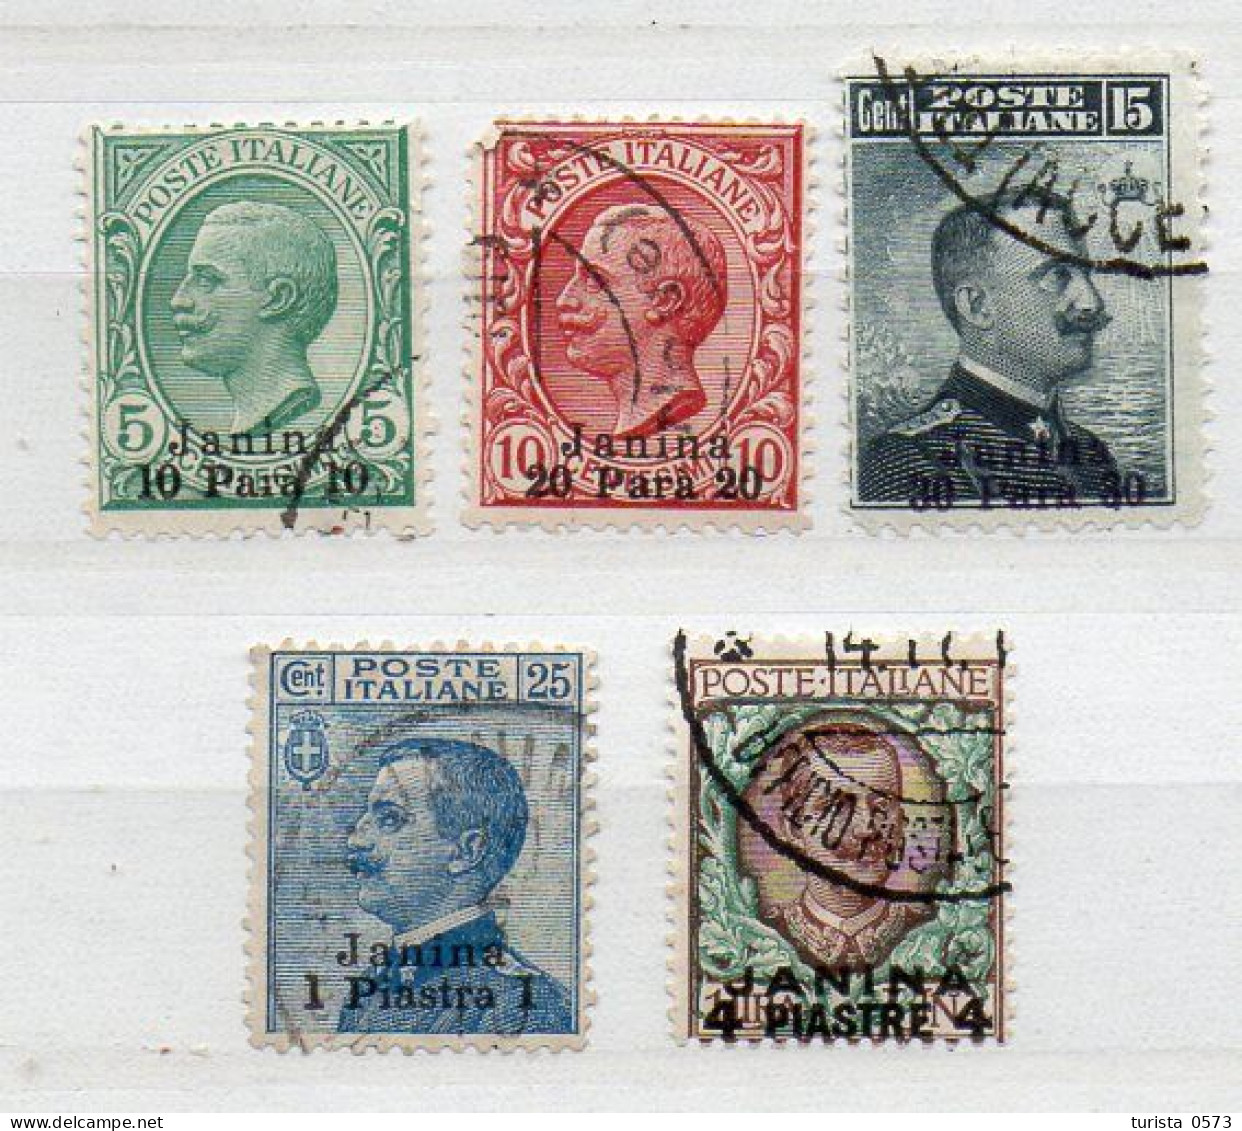 JANINA 1910/11 Ufficio Postale Italiano - Lots & Kiloware (mixtures) - Max. 999 Stamps